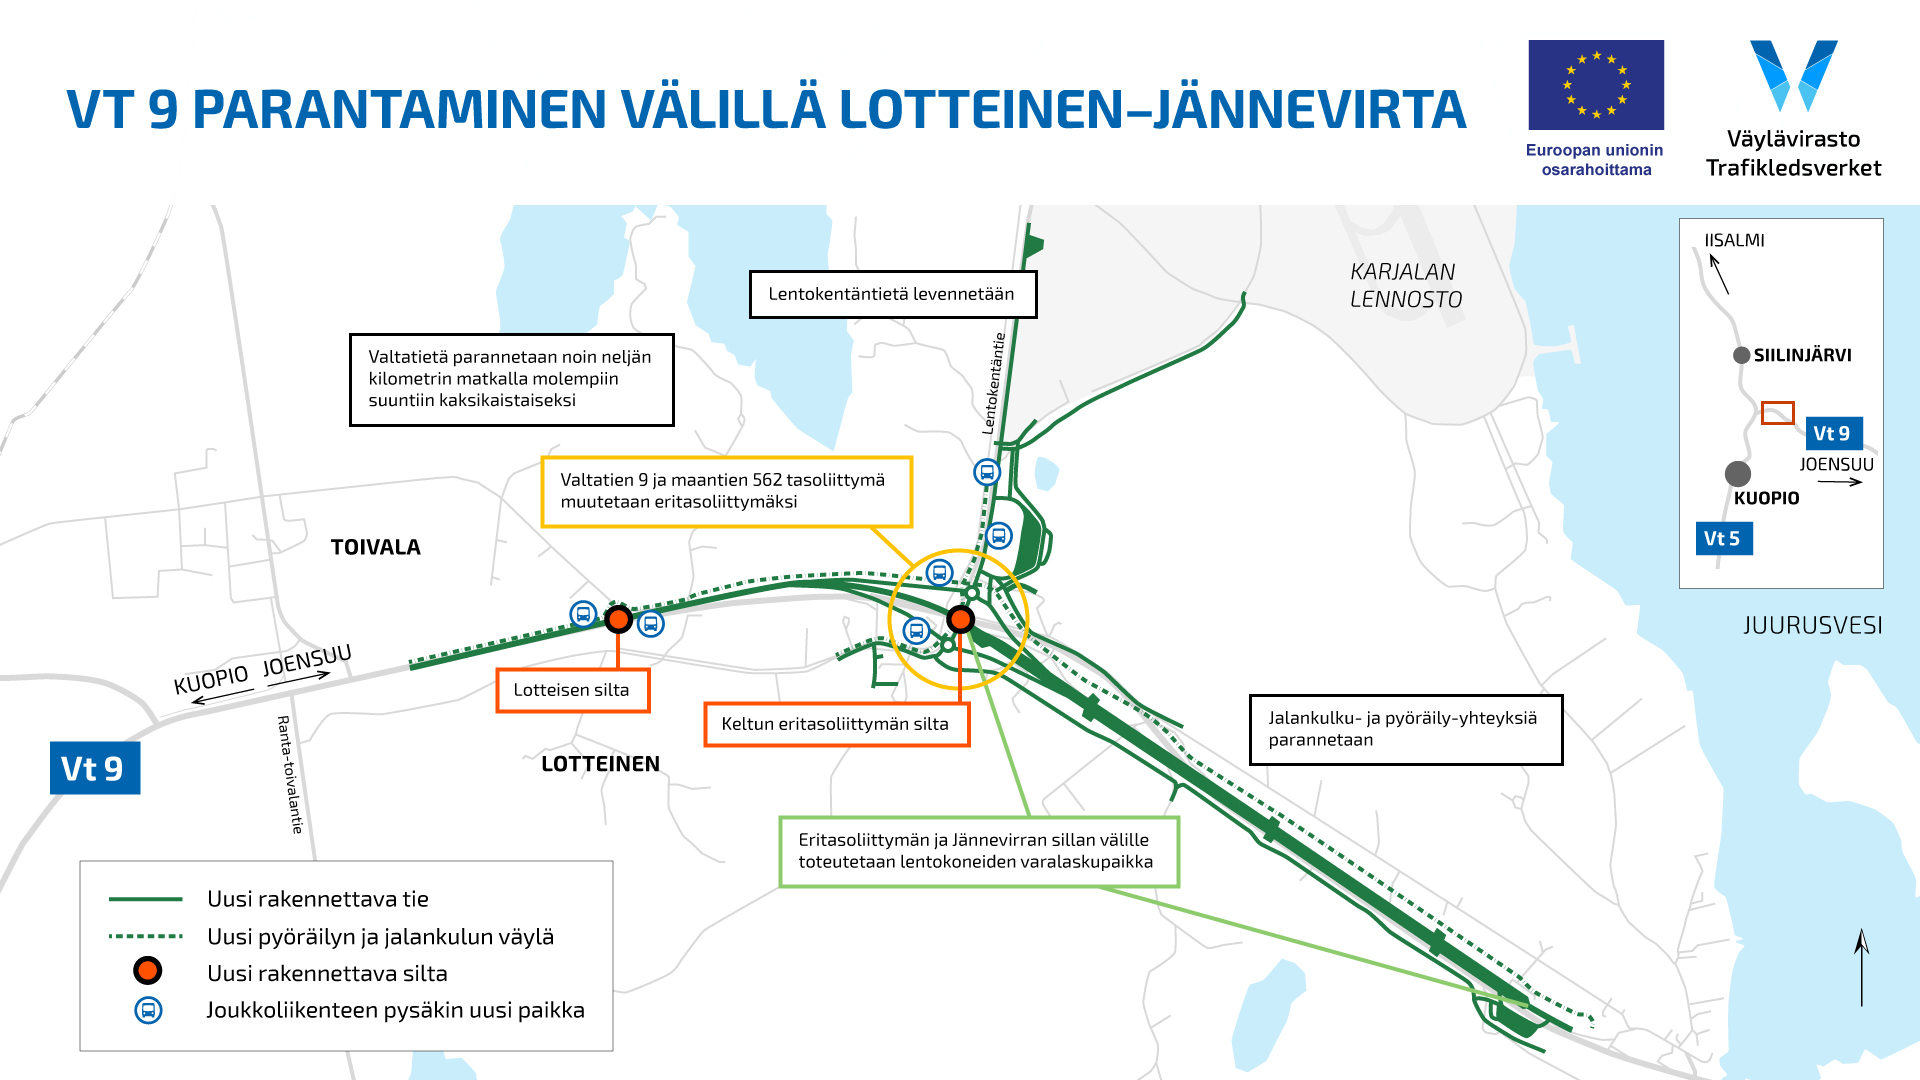 VT 9 parantaminen välillä Lotteinen–Jännevirta -hankkeen kartta, johon on merkitty hankkeen työkohteet.